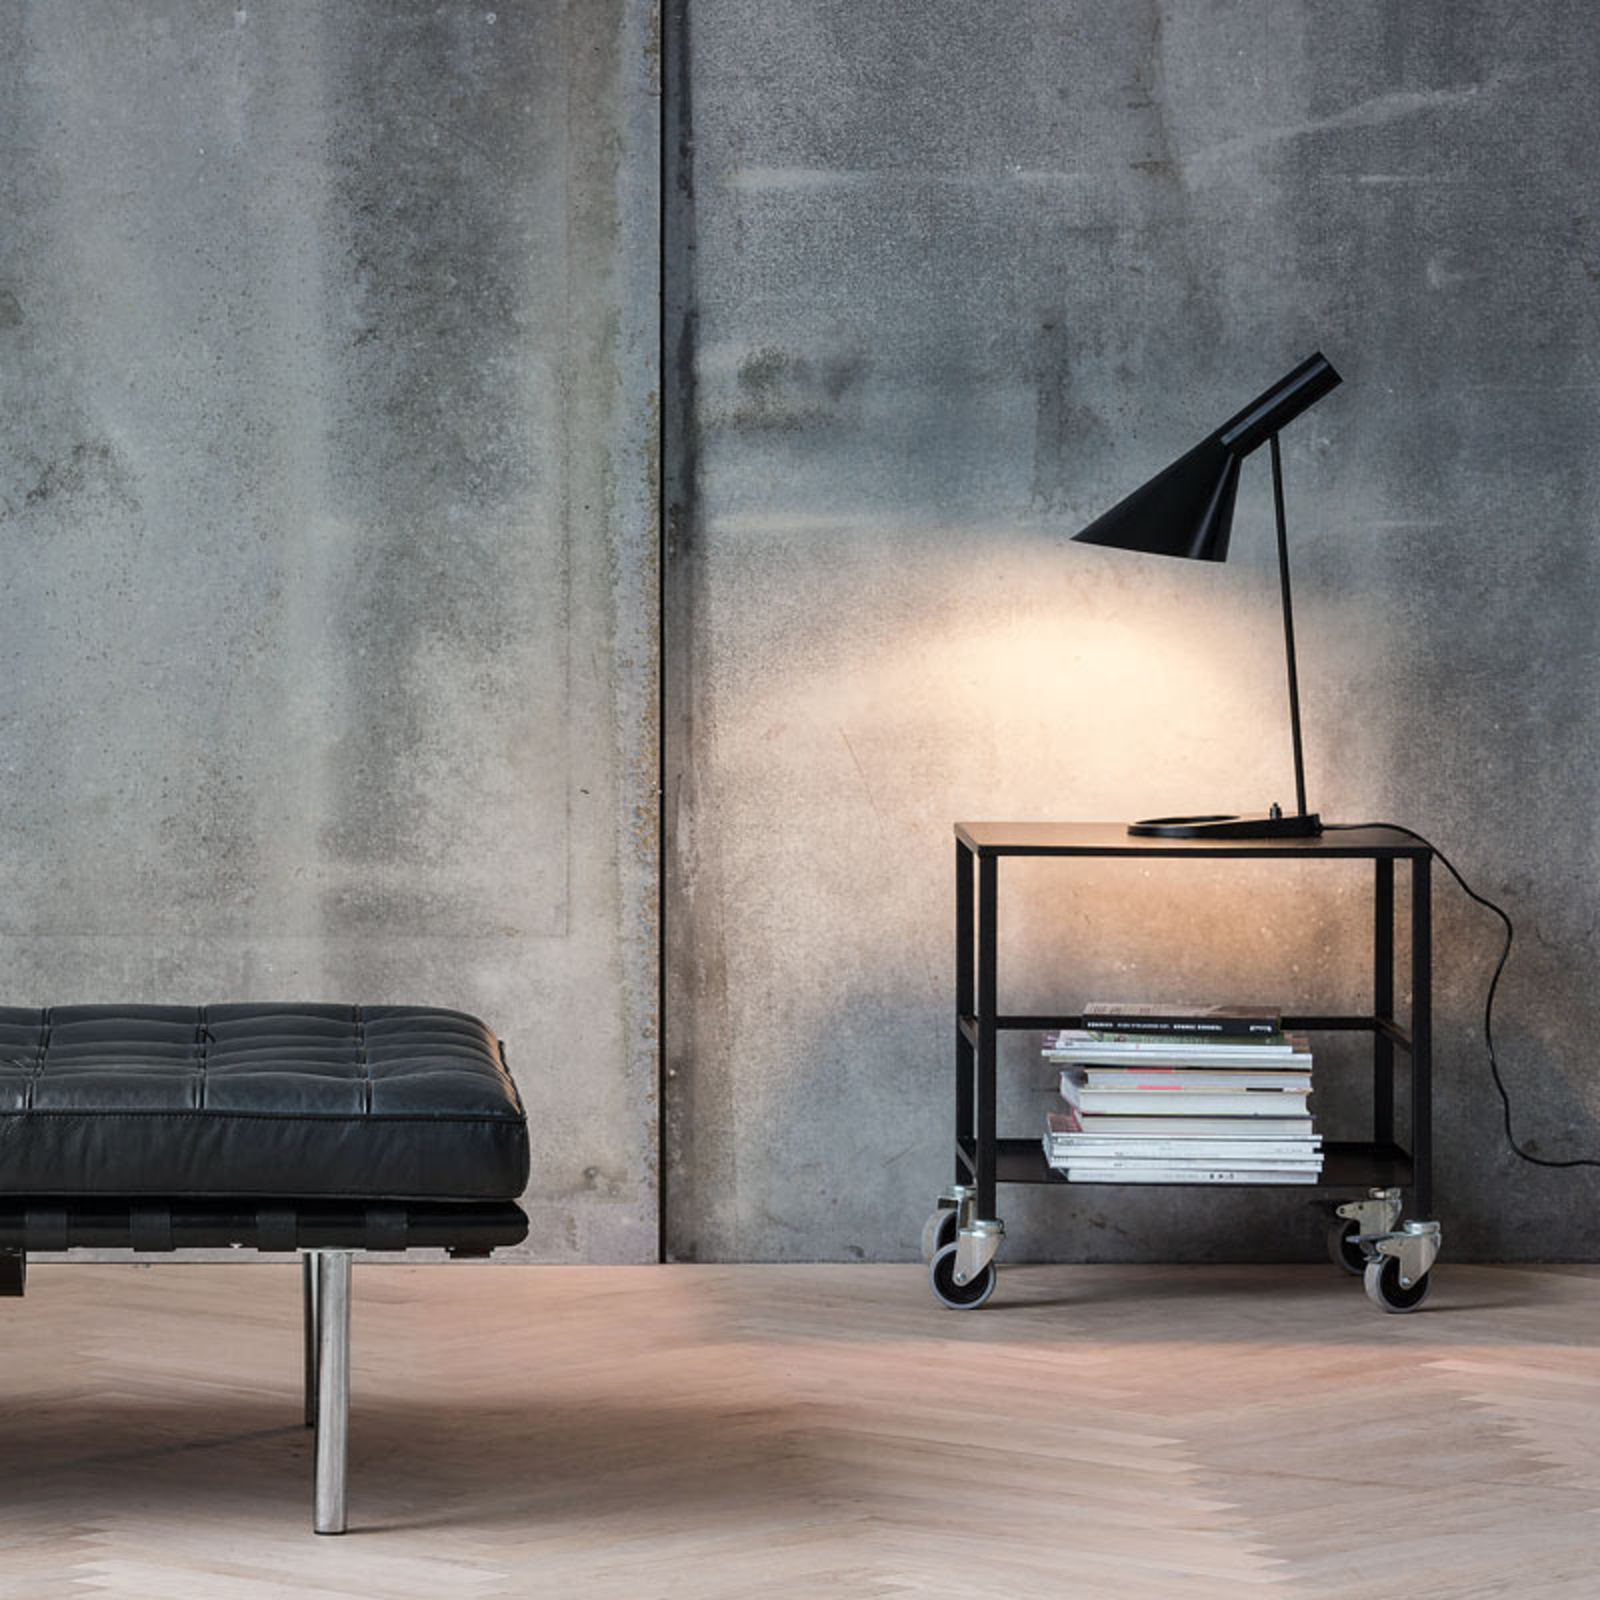 Louis Poulsen AJ - designová stolní lampa, černá